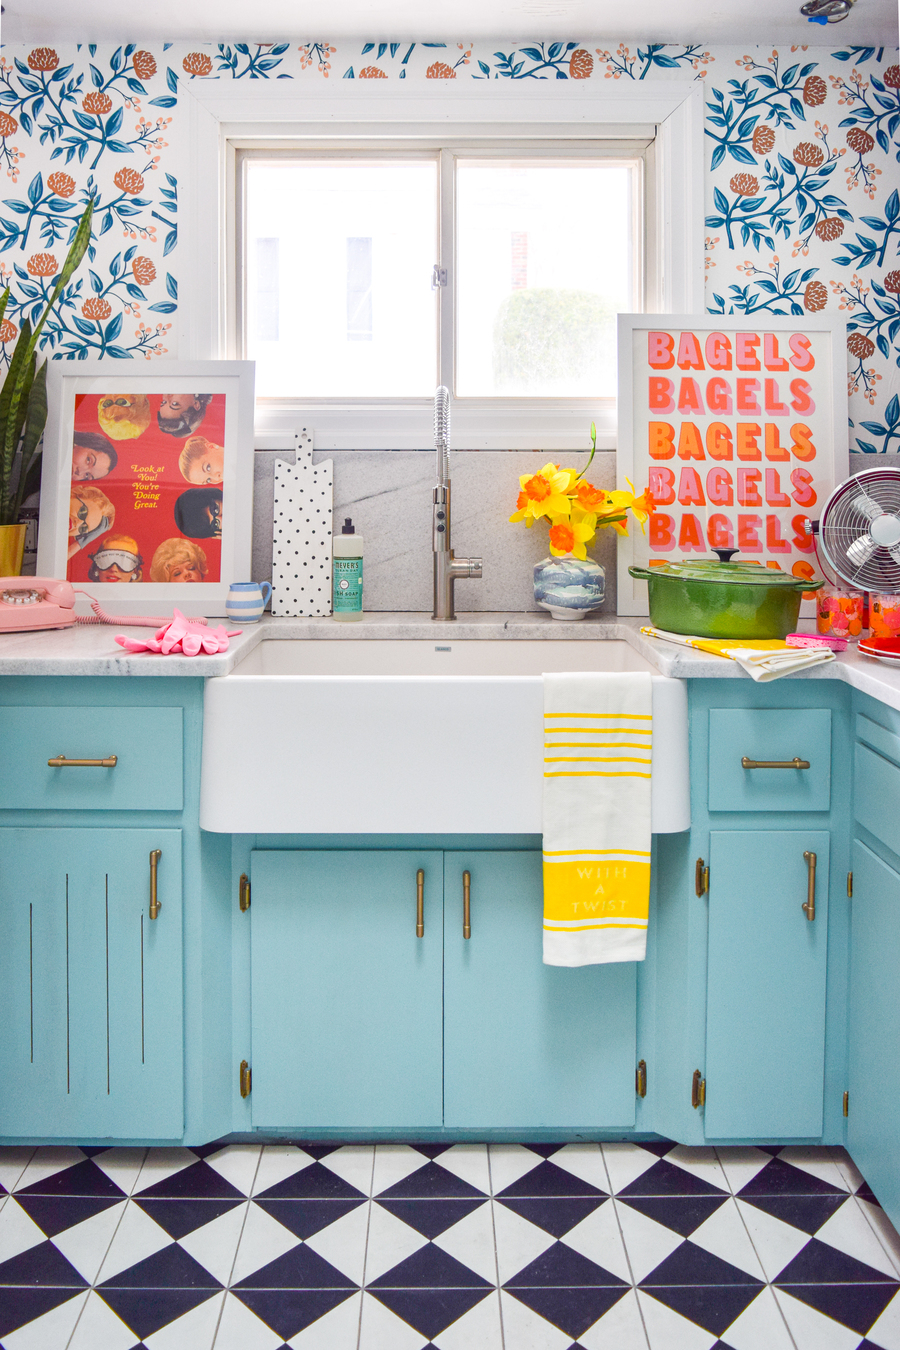 Una cocina muy colorida, con papel mural de flores y hojas en varios tonos.